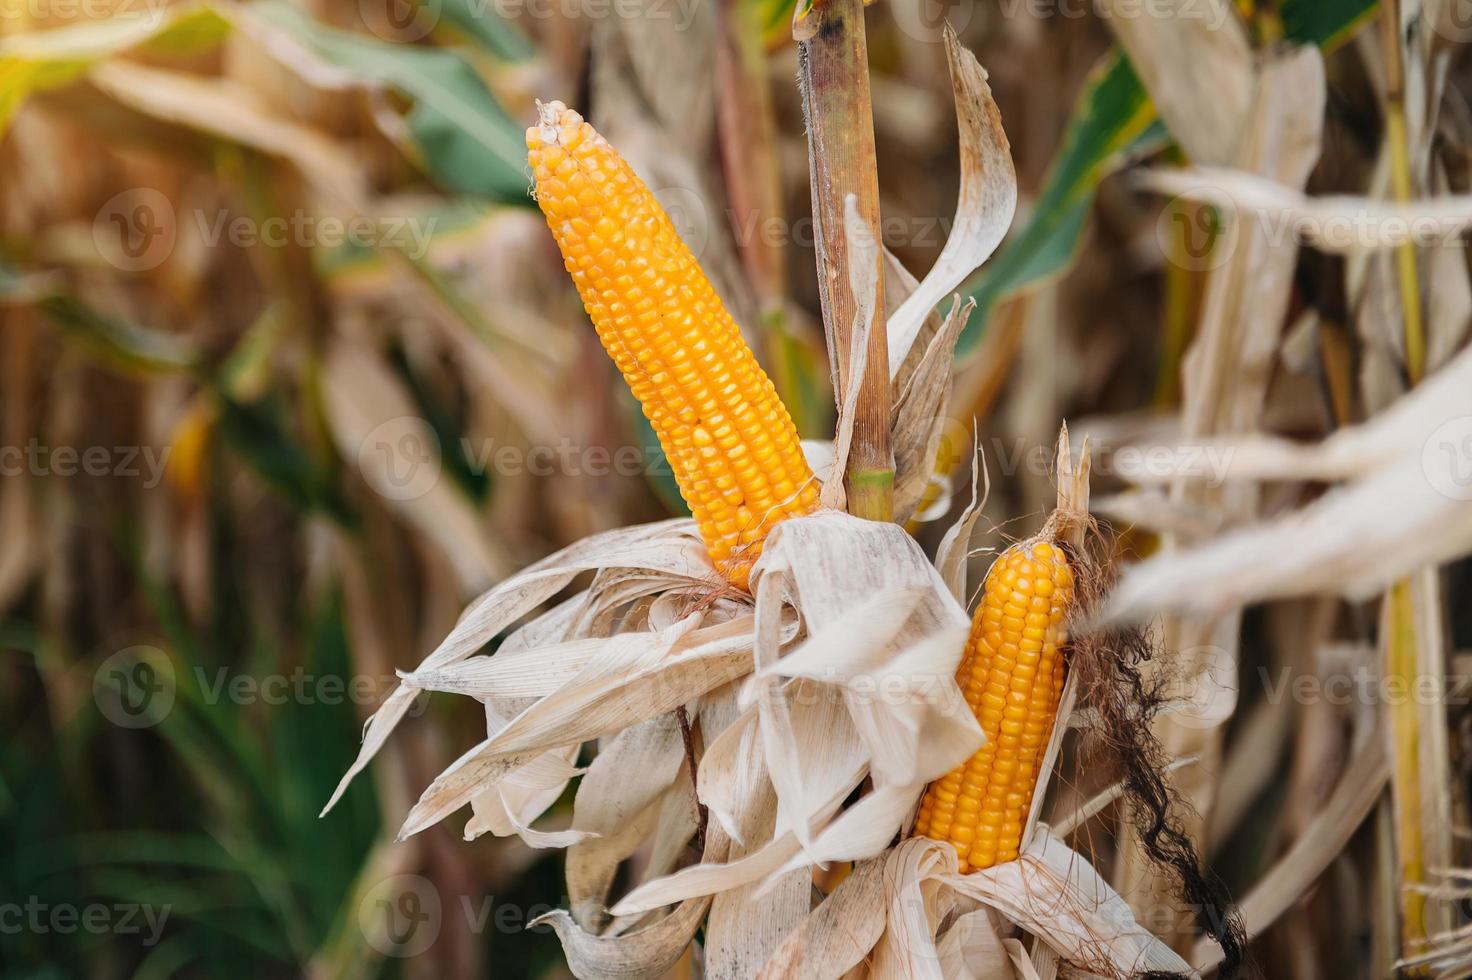 immagine di messa a fuoco selettiva della pannocchia di mais nel campo di mais biologico. mais in attesa di essere raccolto foto